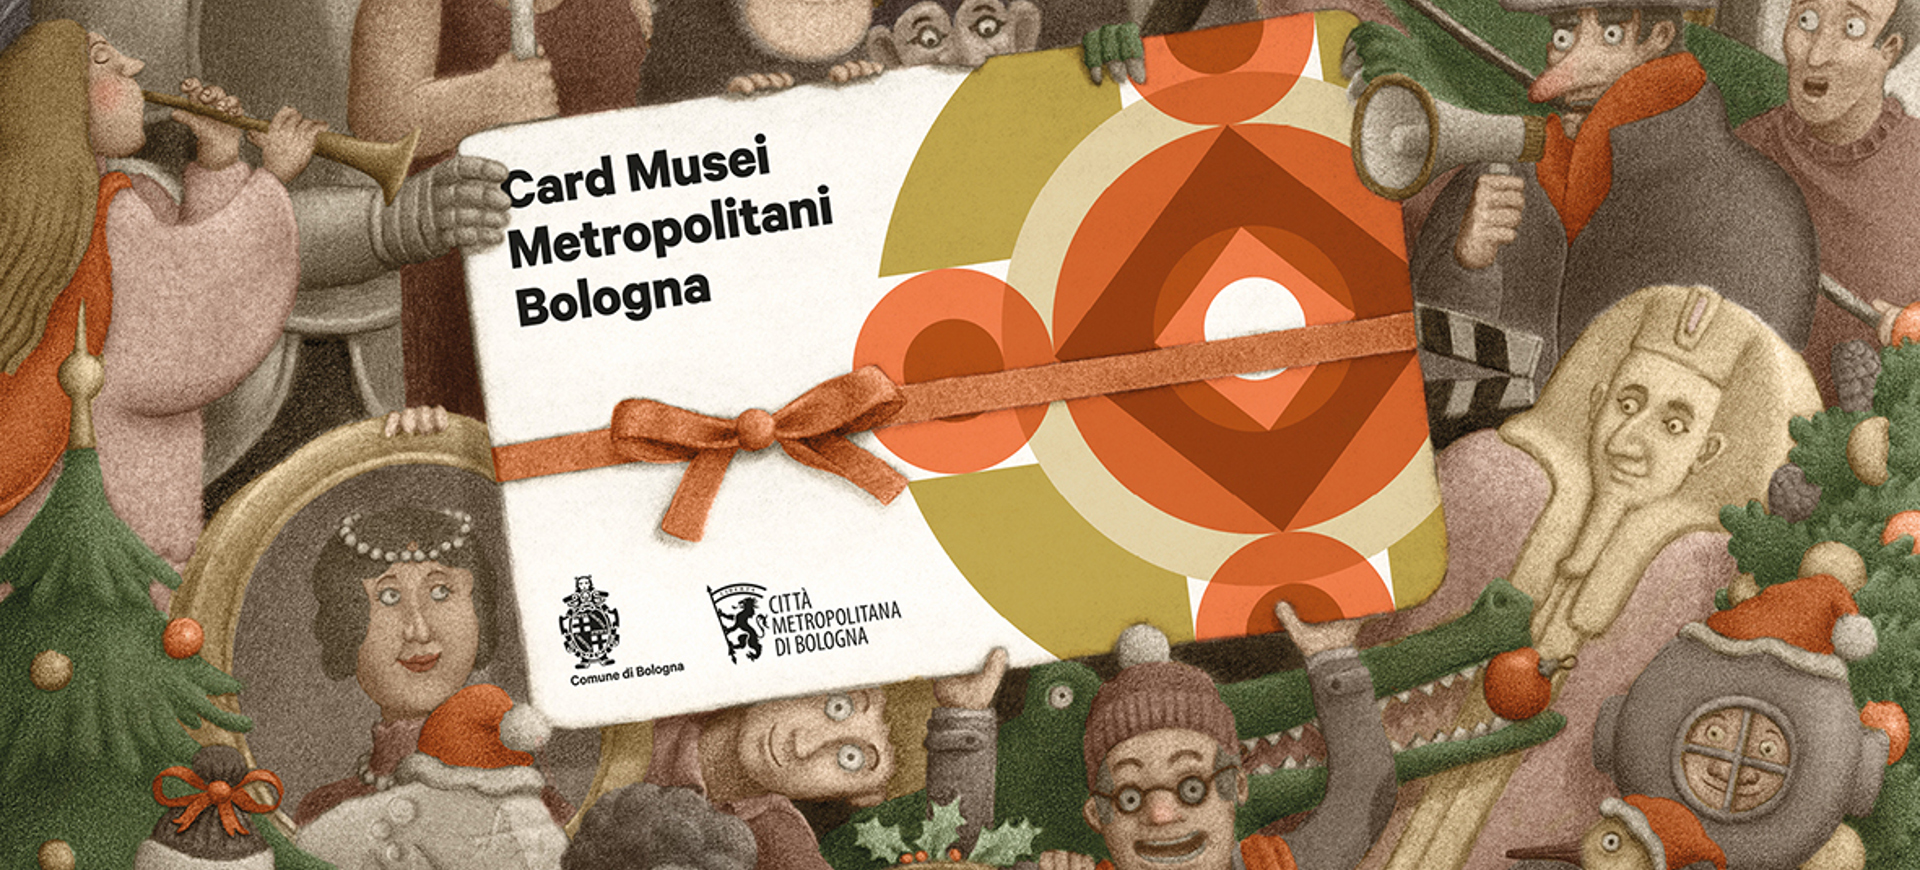 Immagine della campagna di promozione della Card Musei Metropolitani